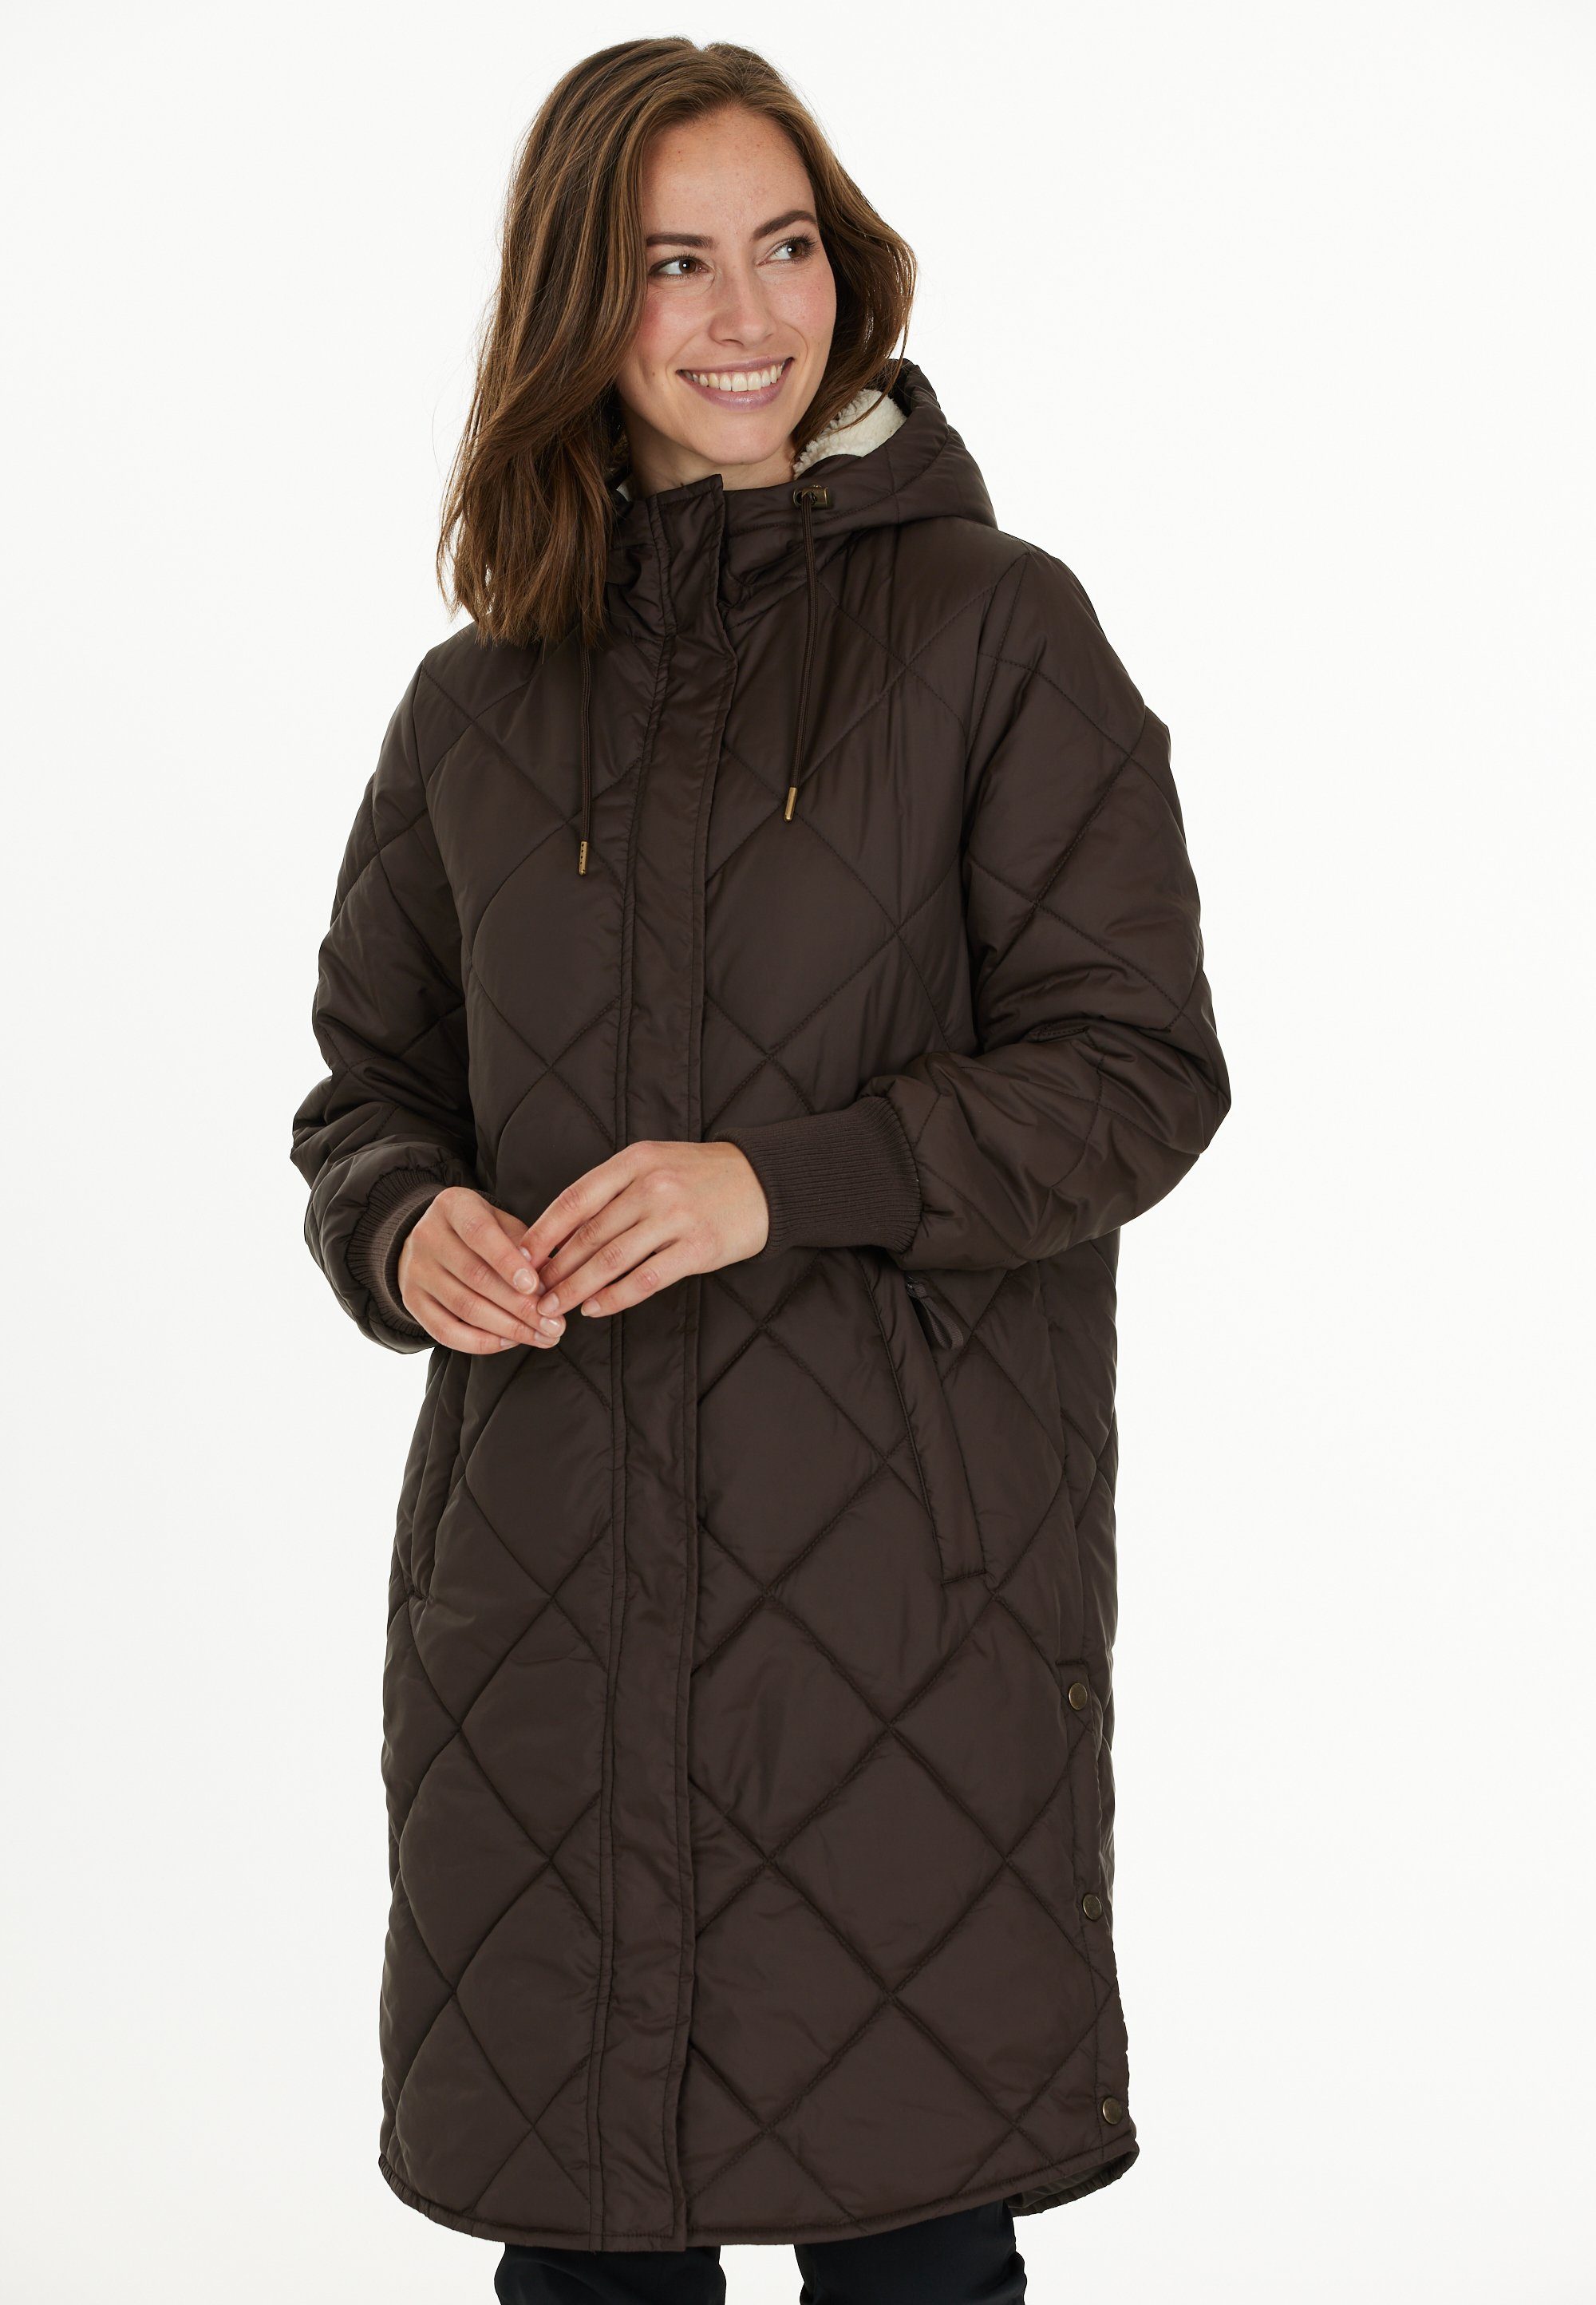 Weather Report Jacken für Damen OTTO | kaufen online